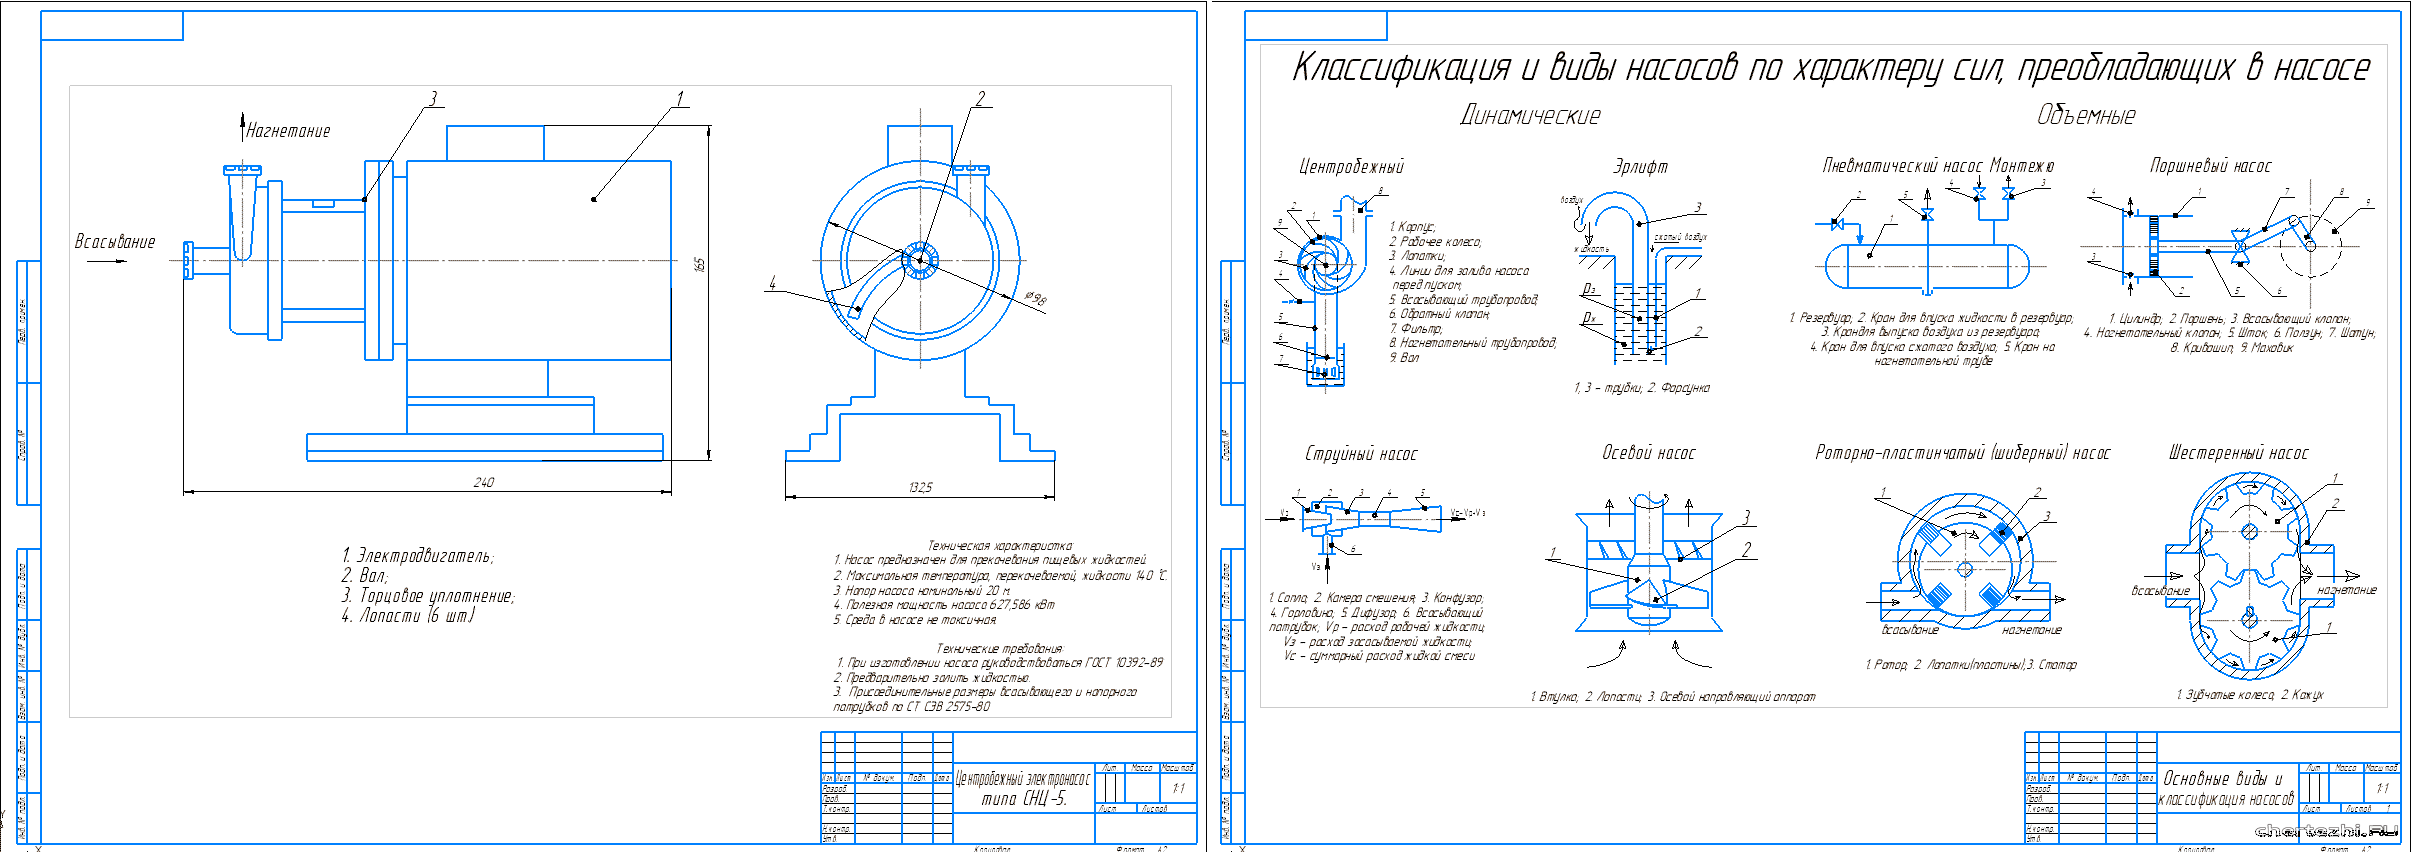 Курсовой проект - Процесс перемещения жидкостей в аппаратах и в трубопроводах насосами различного действия